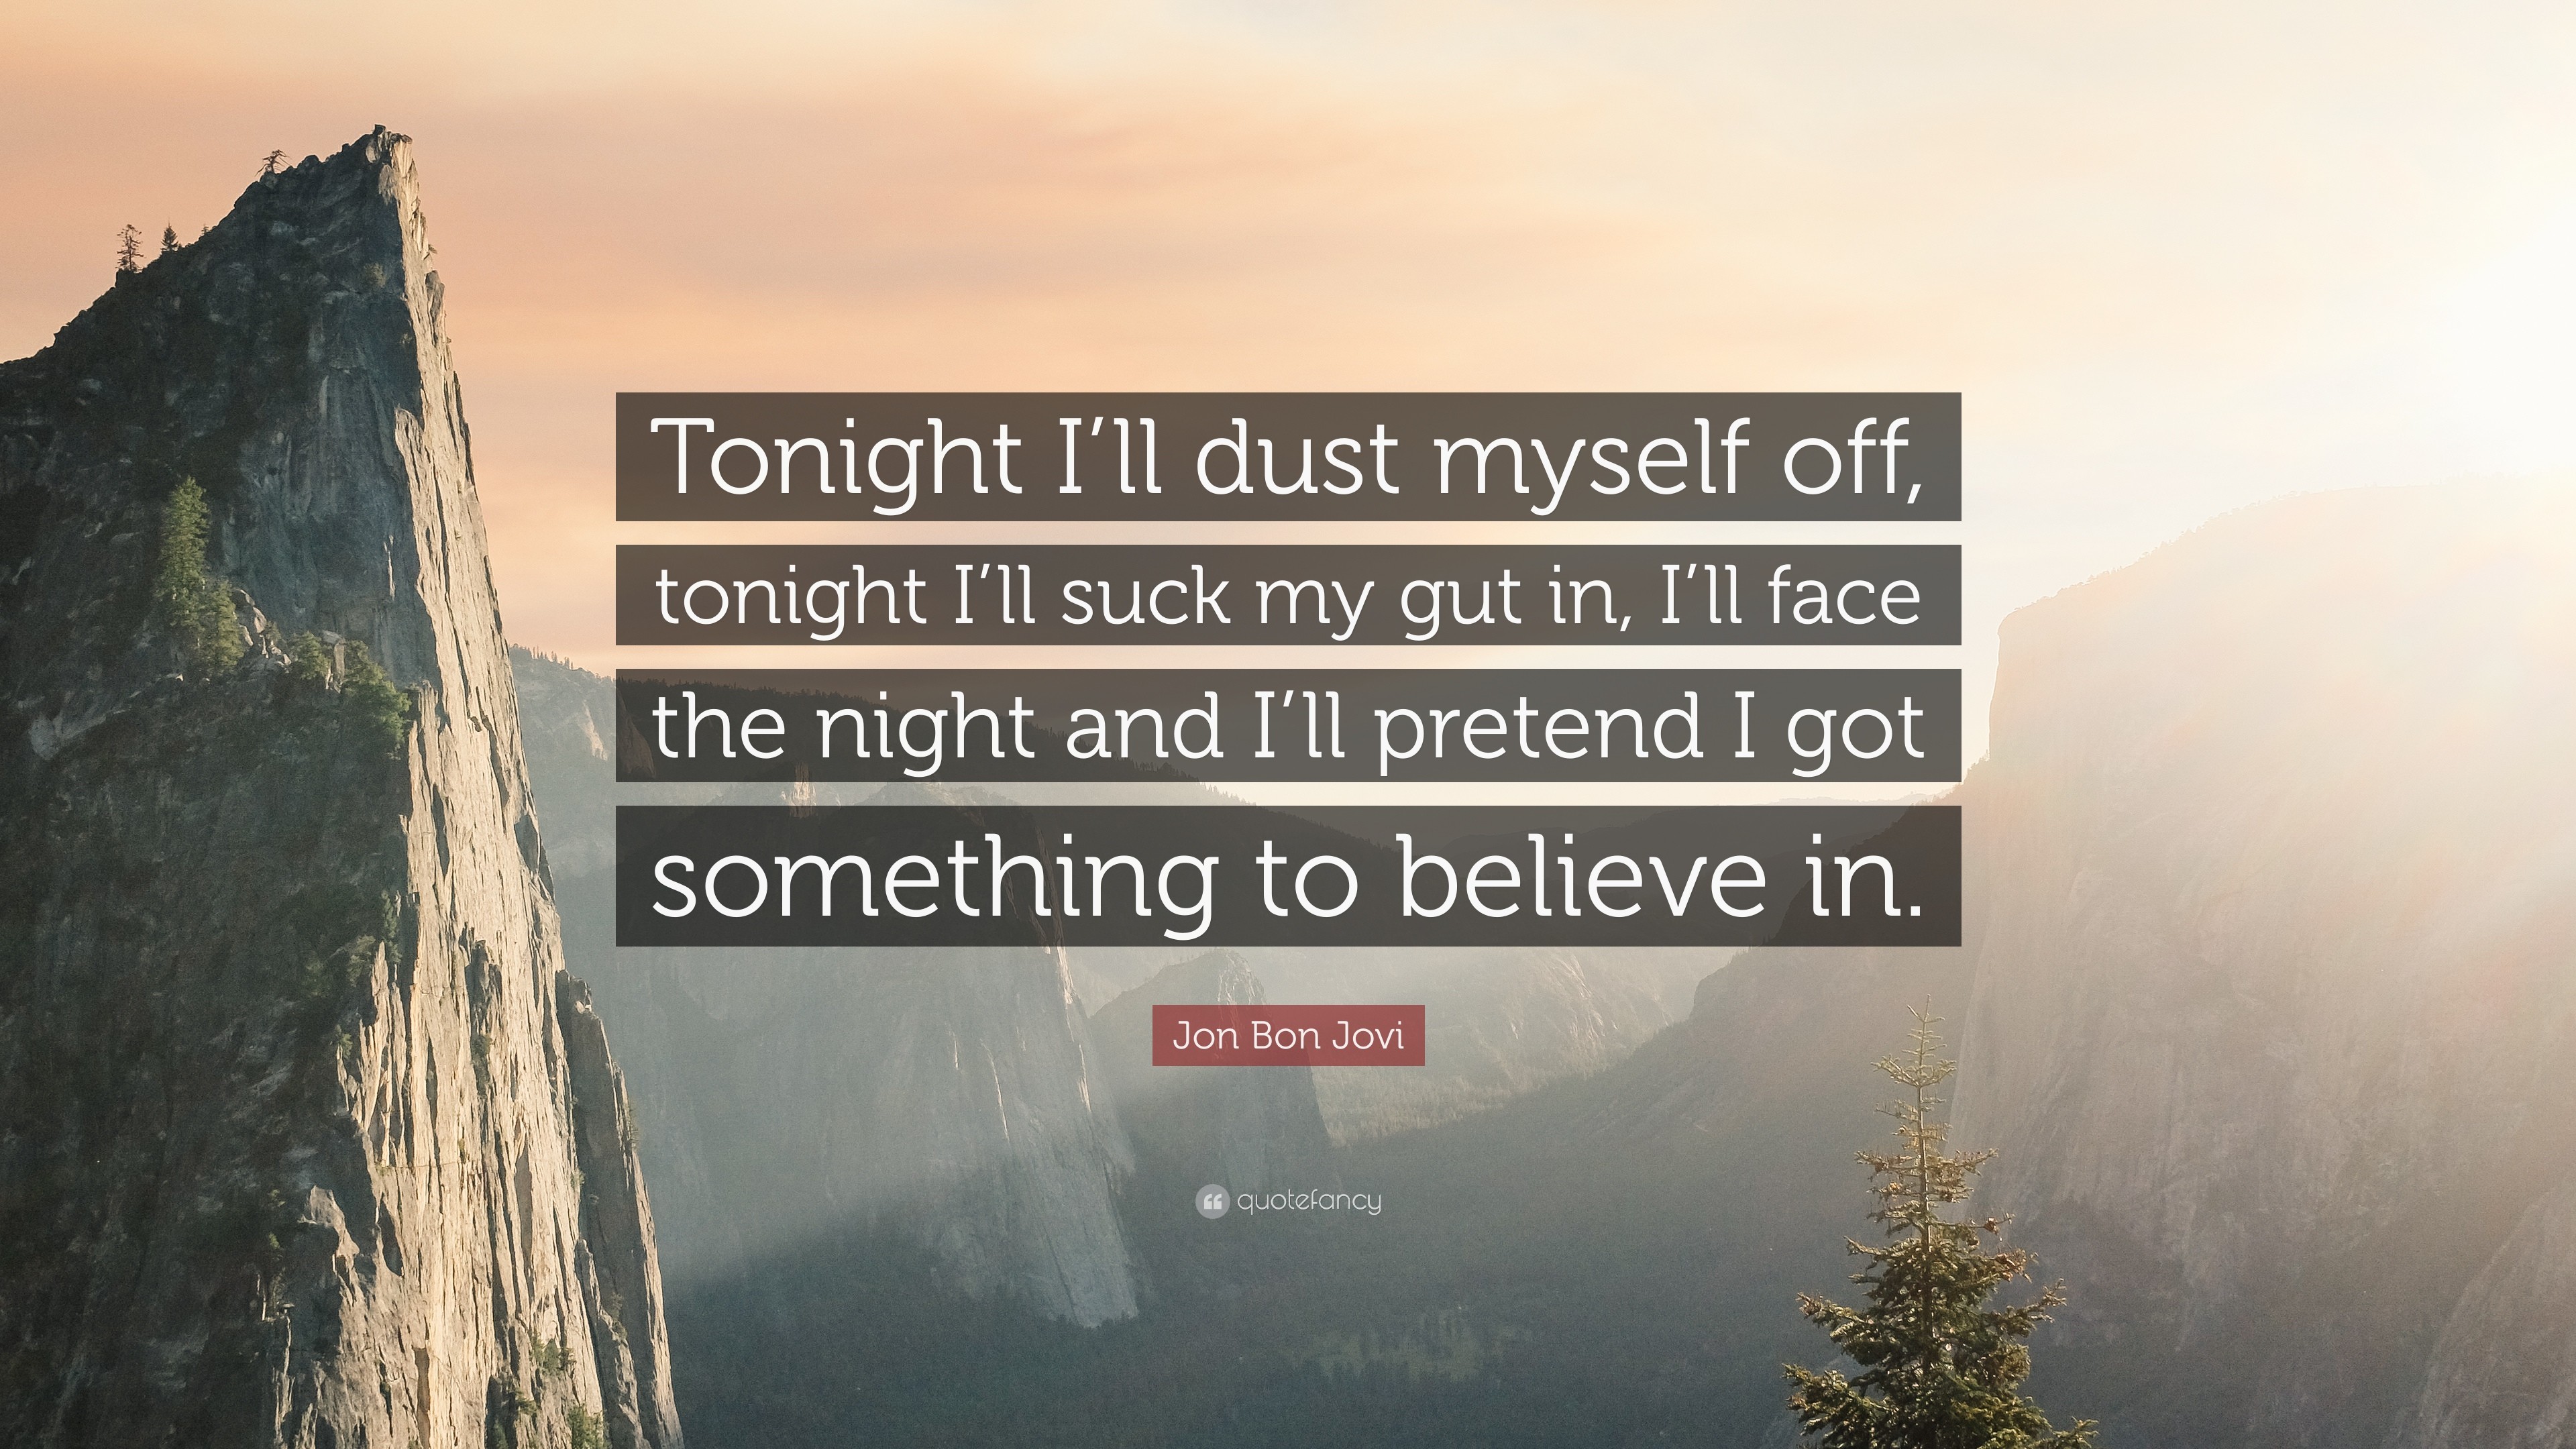 3840x2160 Jon Bon Jovi Quote: “Tonight I'll dust myself off, tonight I